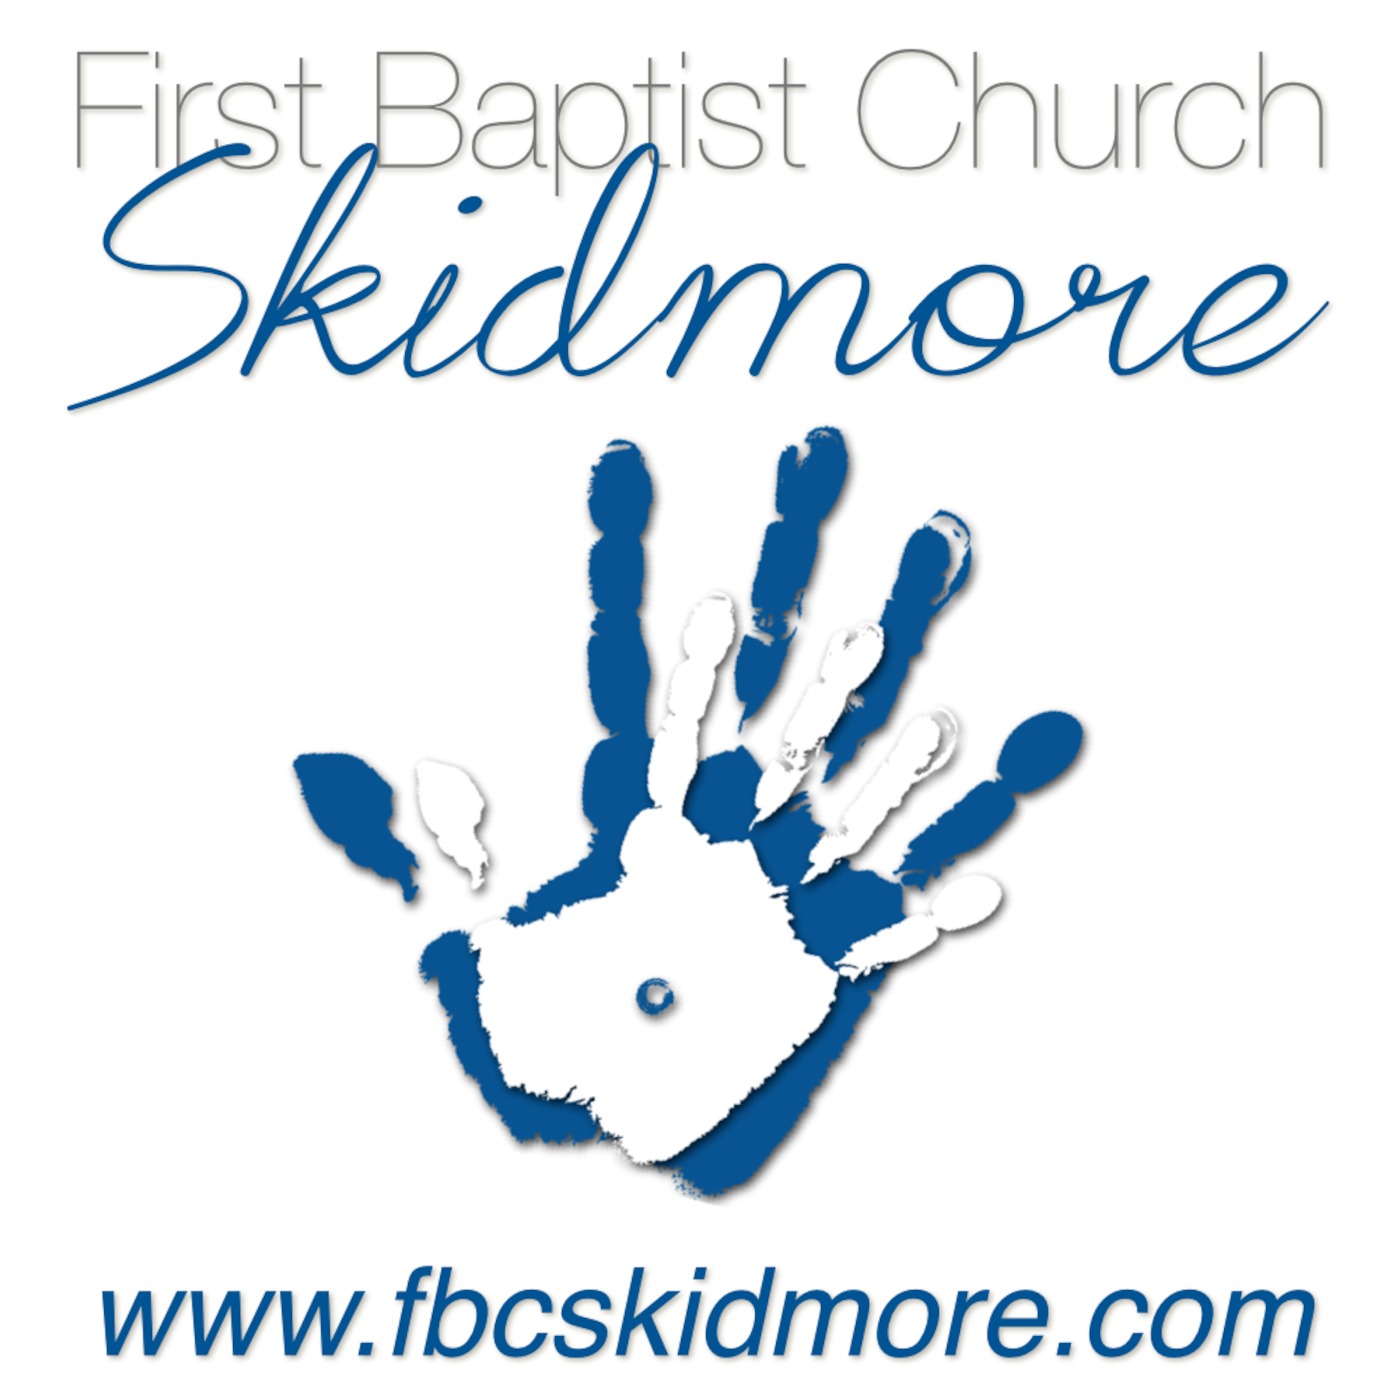 First Baptist Church Skidmore